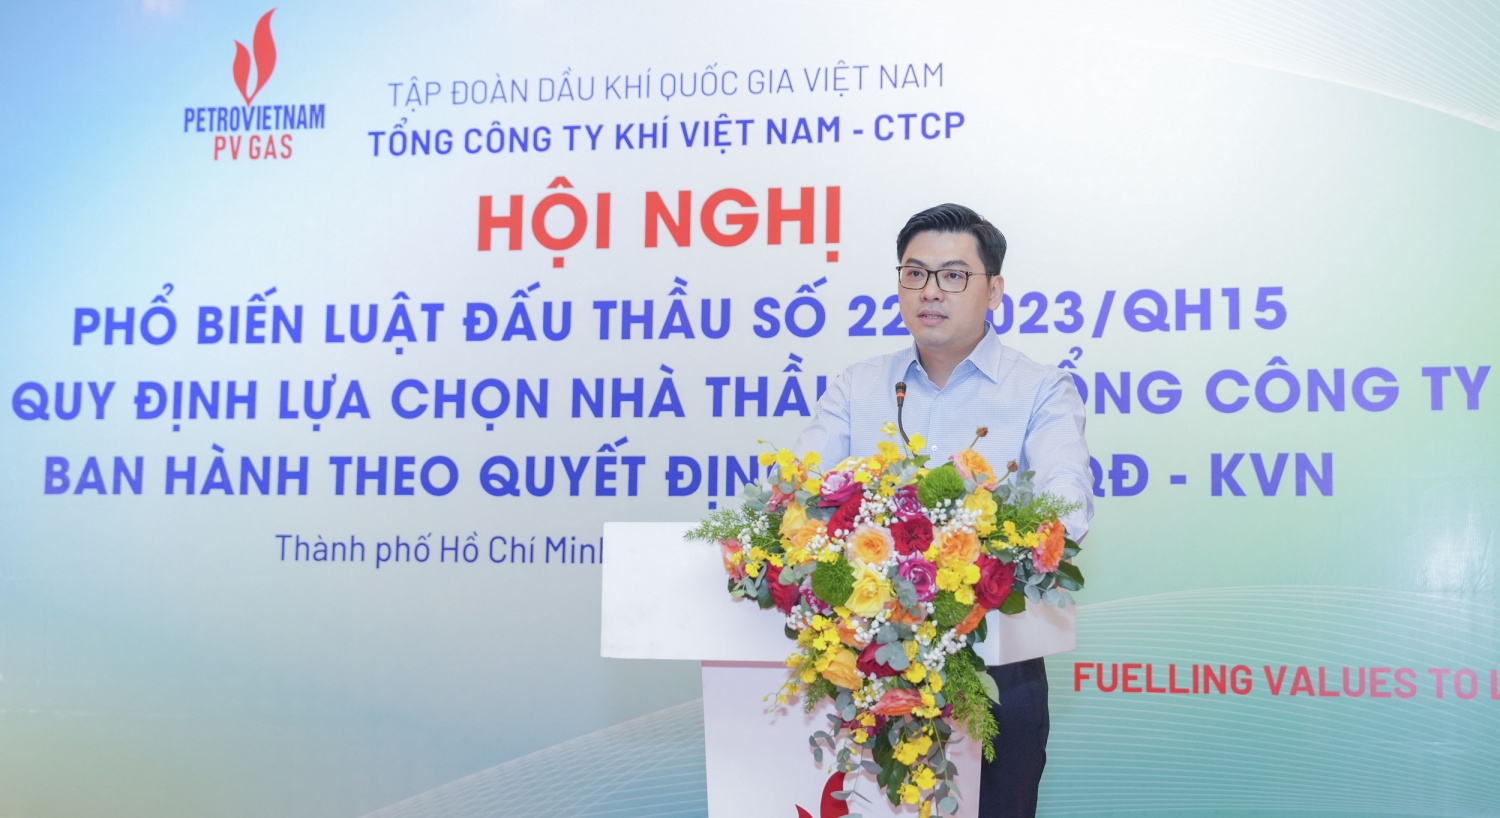 H1. Phó Tổng Giám đốc PV GAS Nguyễn Phúc Tuệ phát biểu tại Hội nghị